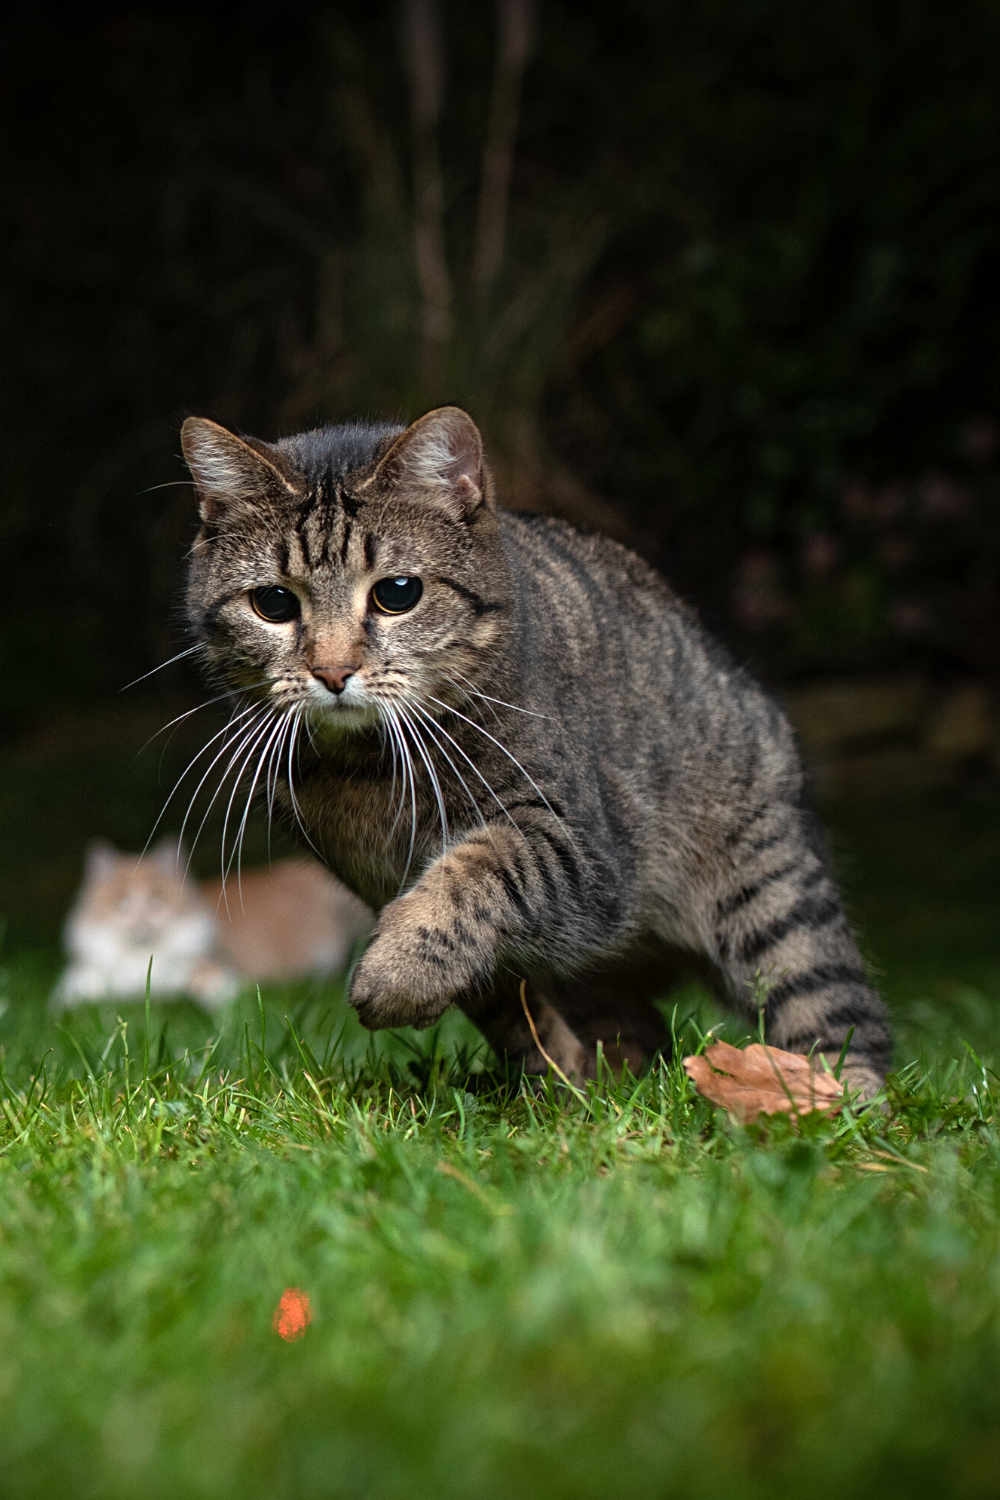 Même si les chats sont domestiqués, ils ne perdent pas leurs instincts naturels, qui incluent la chasse pour se nourrir